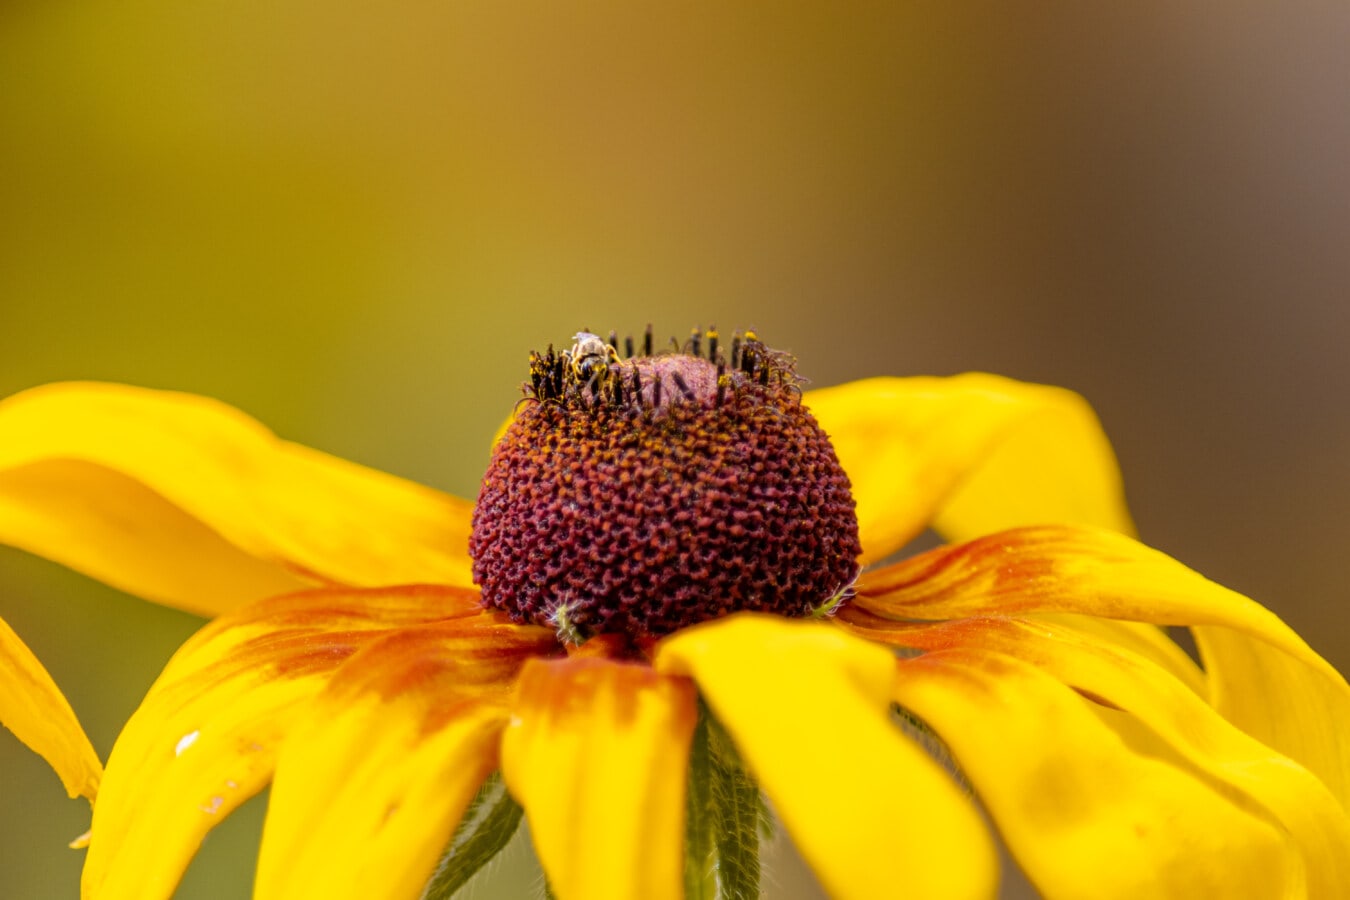 μελισσών, μικρό, ύπερο, γύρη, κίτρινο πορτοκαλί, λουλούδι, από κοντά, κίτρινο, μέλισσα, έντομο